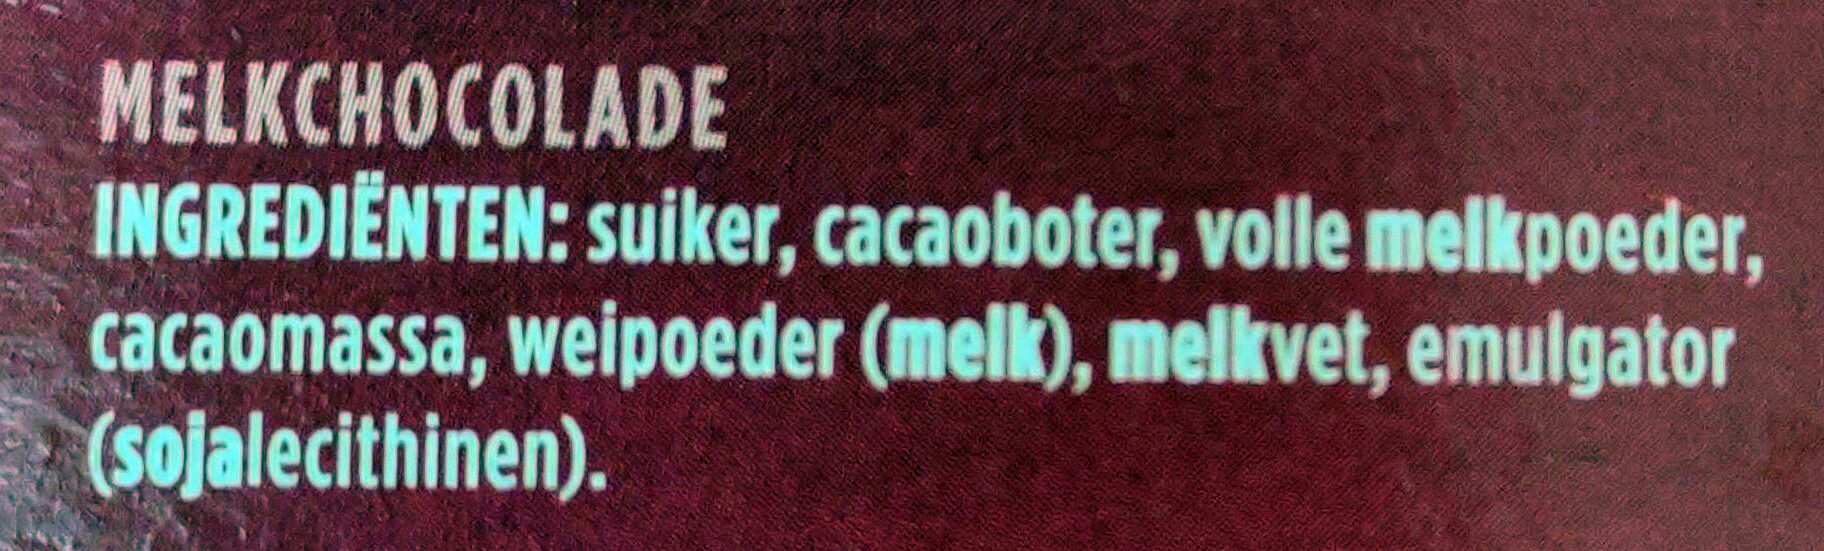 Chocoladeletter E melk - Ingrediënten